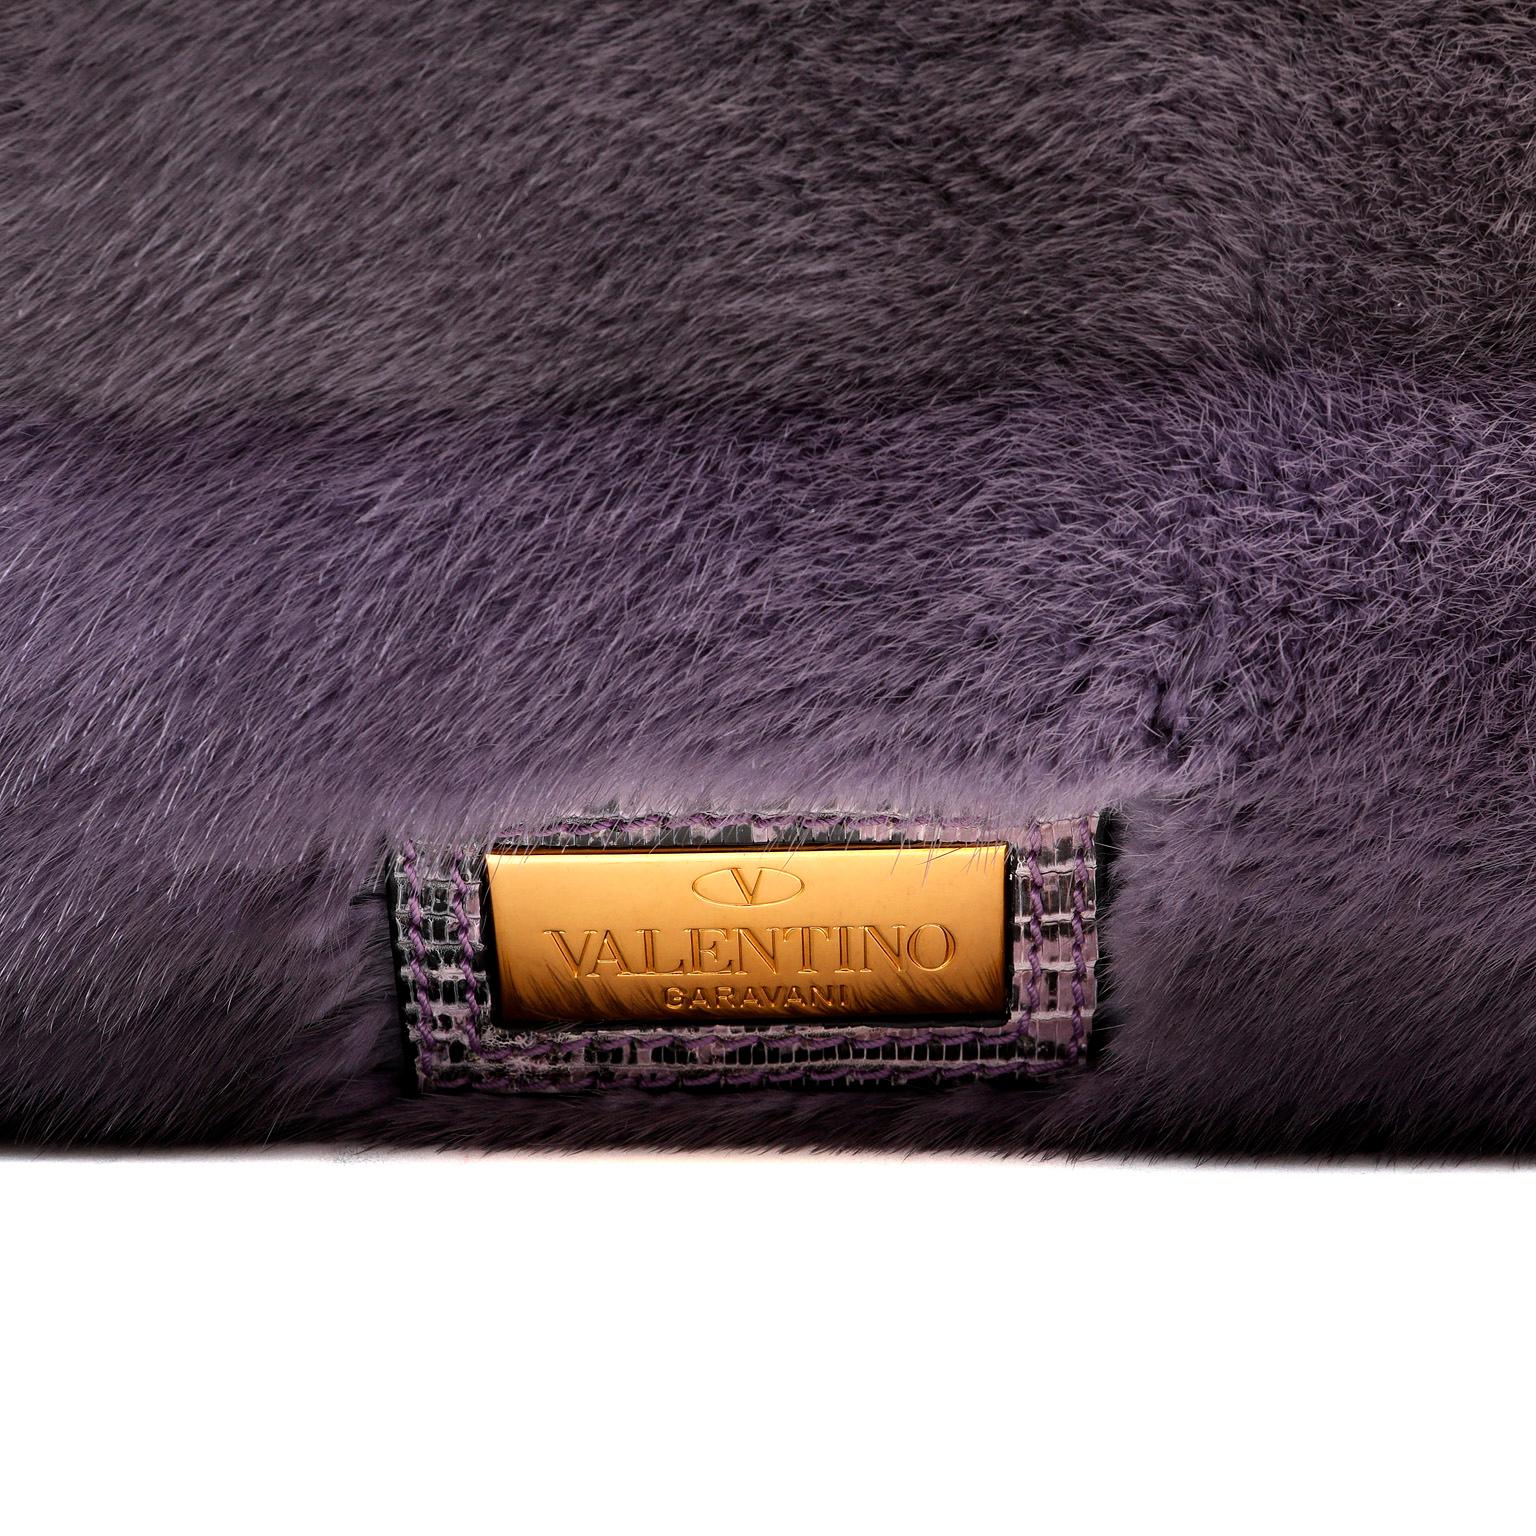 Cet authentique sac fourre-tout en vison rayé violet de Valentino est en parfait état.  Les rayures subtiles de la fourrure ajoutent un magnifique effet d'ombre à ce sac spécial. Double bandoulière en peau de lézard, fermeture magnétique.  Intérieur